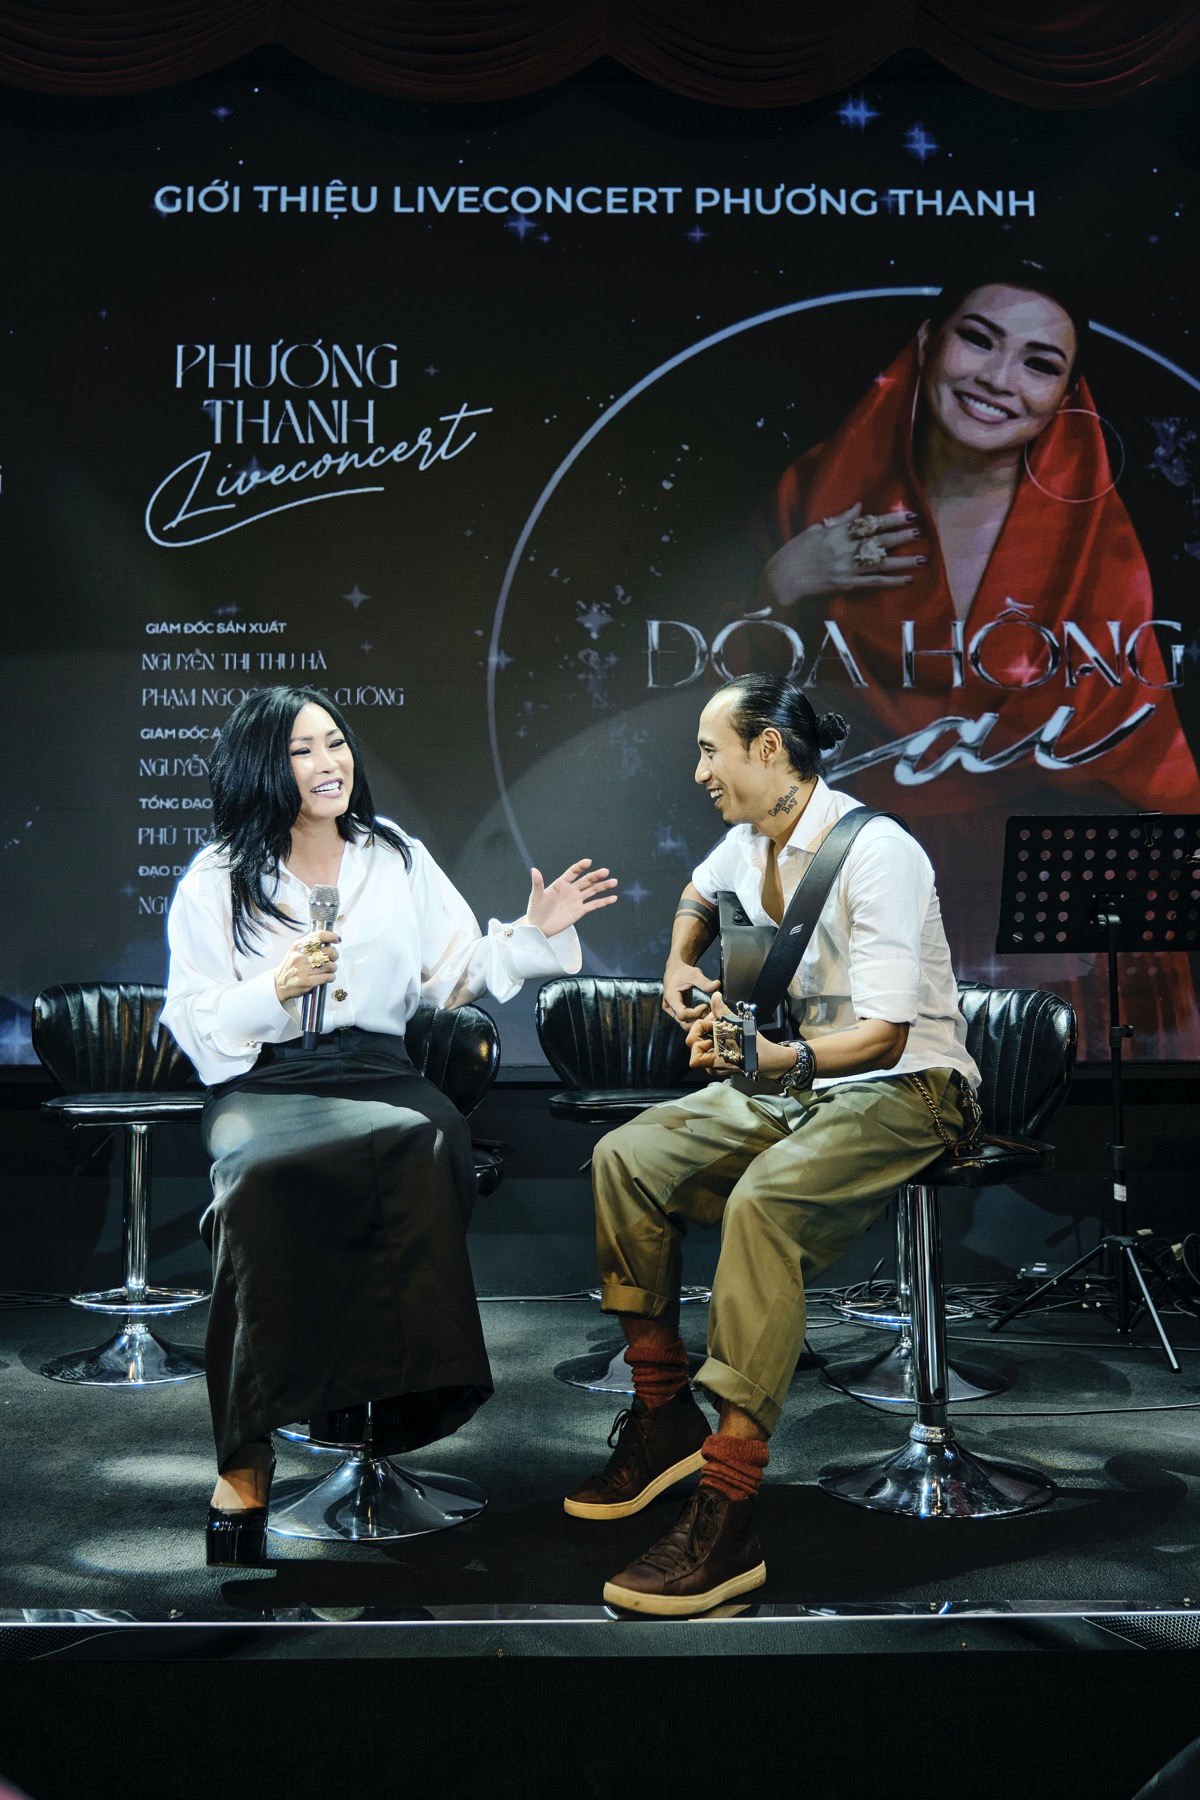 Concert Đóa Hồng Gai của Phương Thanh 